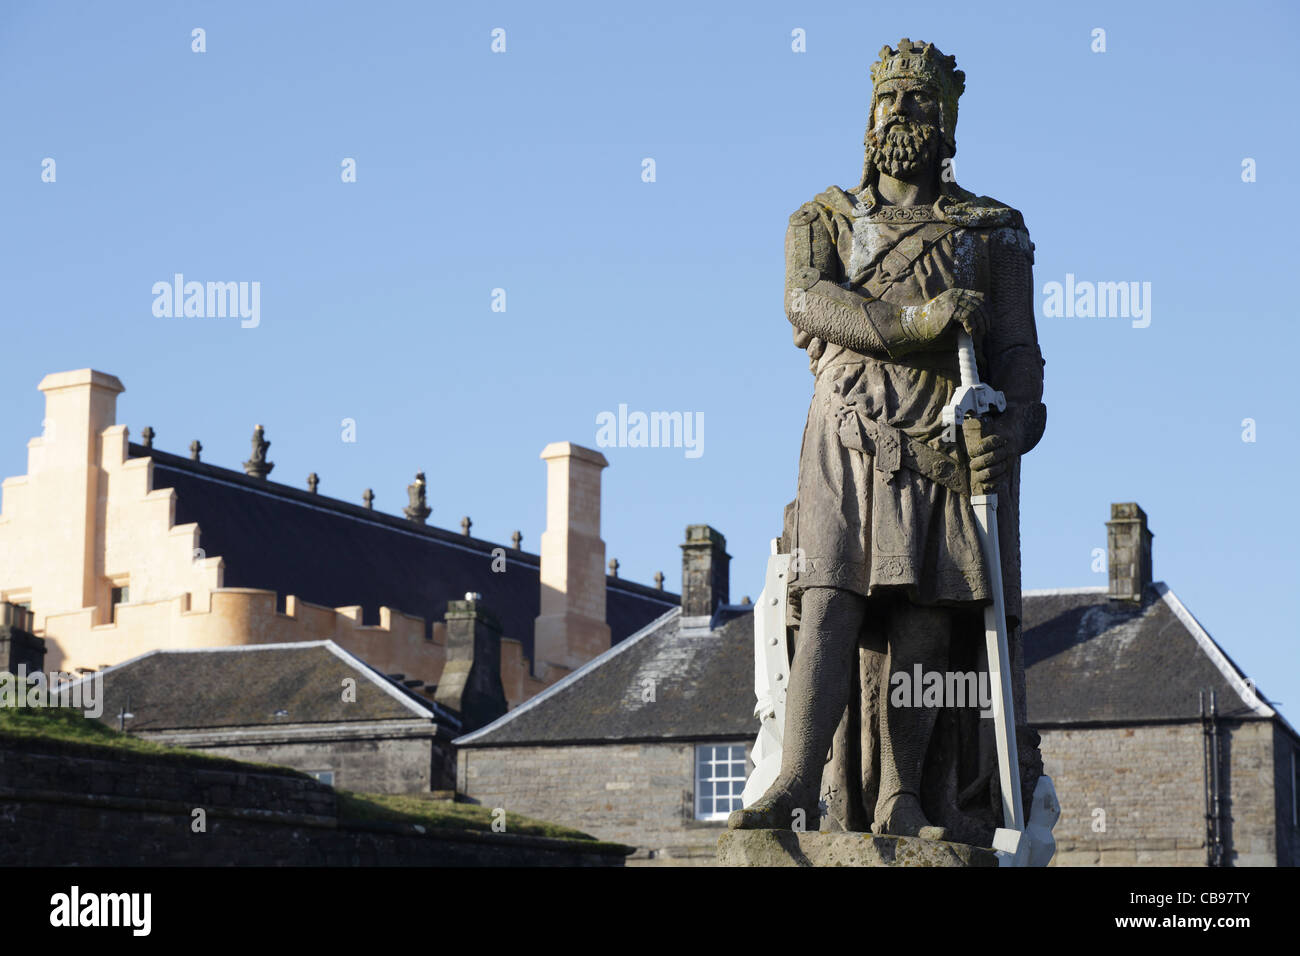 Statua di Re Robert the Bruce sulla spianata del Castello di Stirling, Scozia, Regno Unito Foto Stock